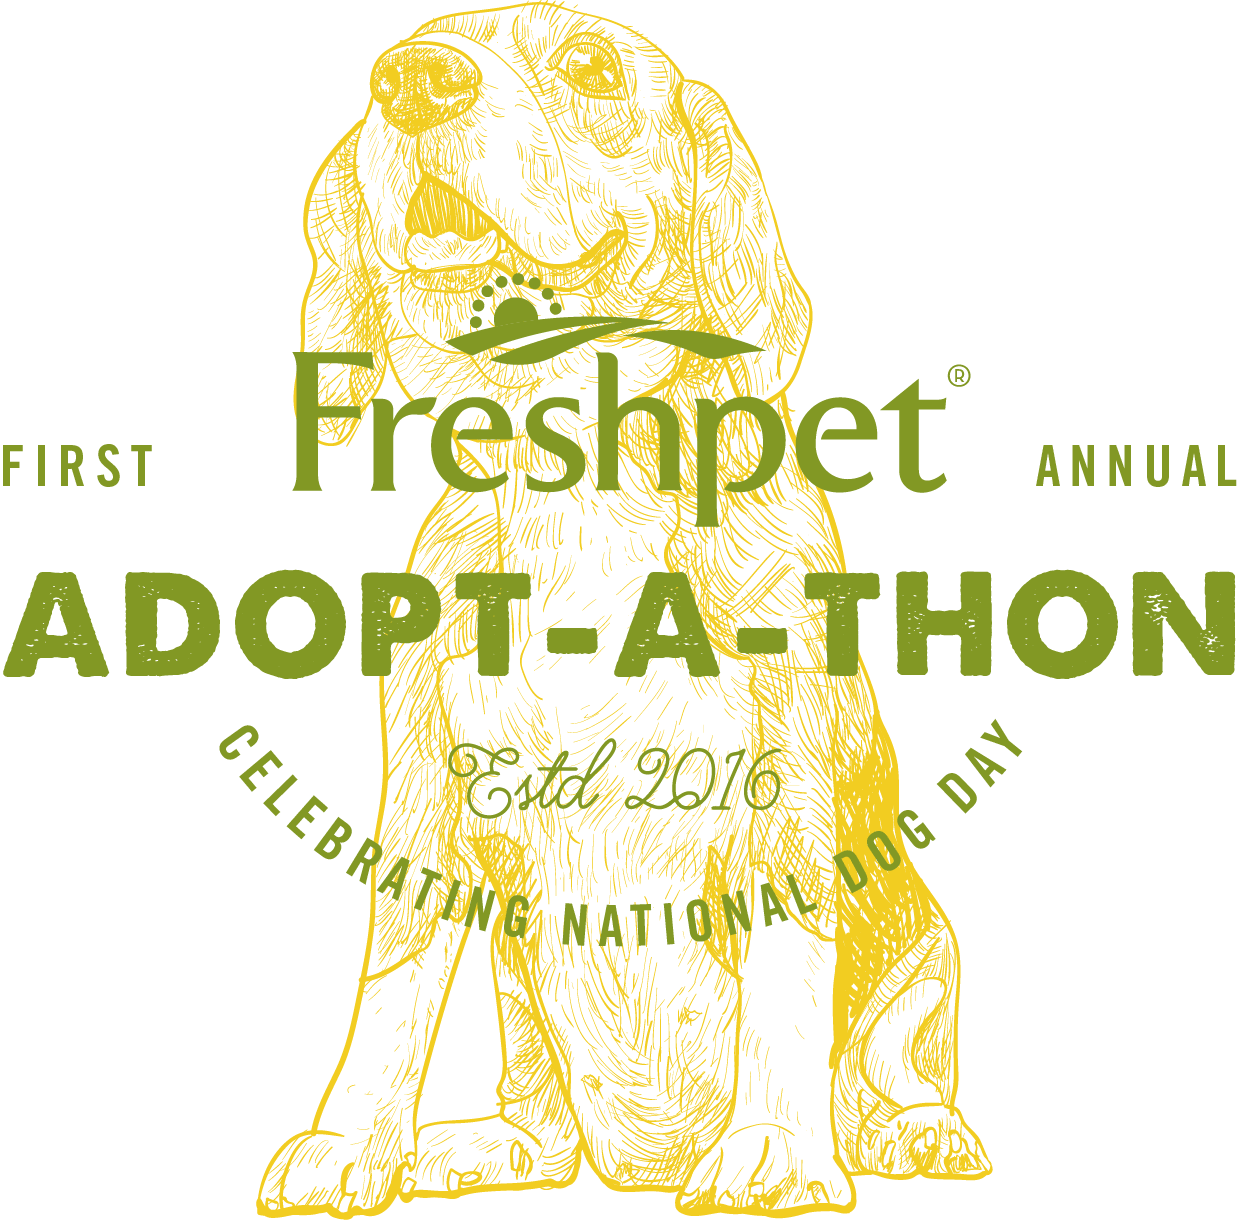 Comemore o Dia Nacional do Cão com o primeiro ADOPT-A-THON anual